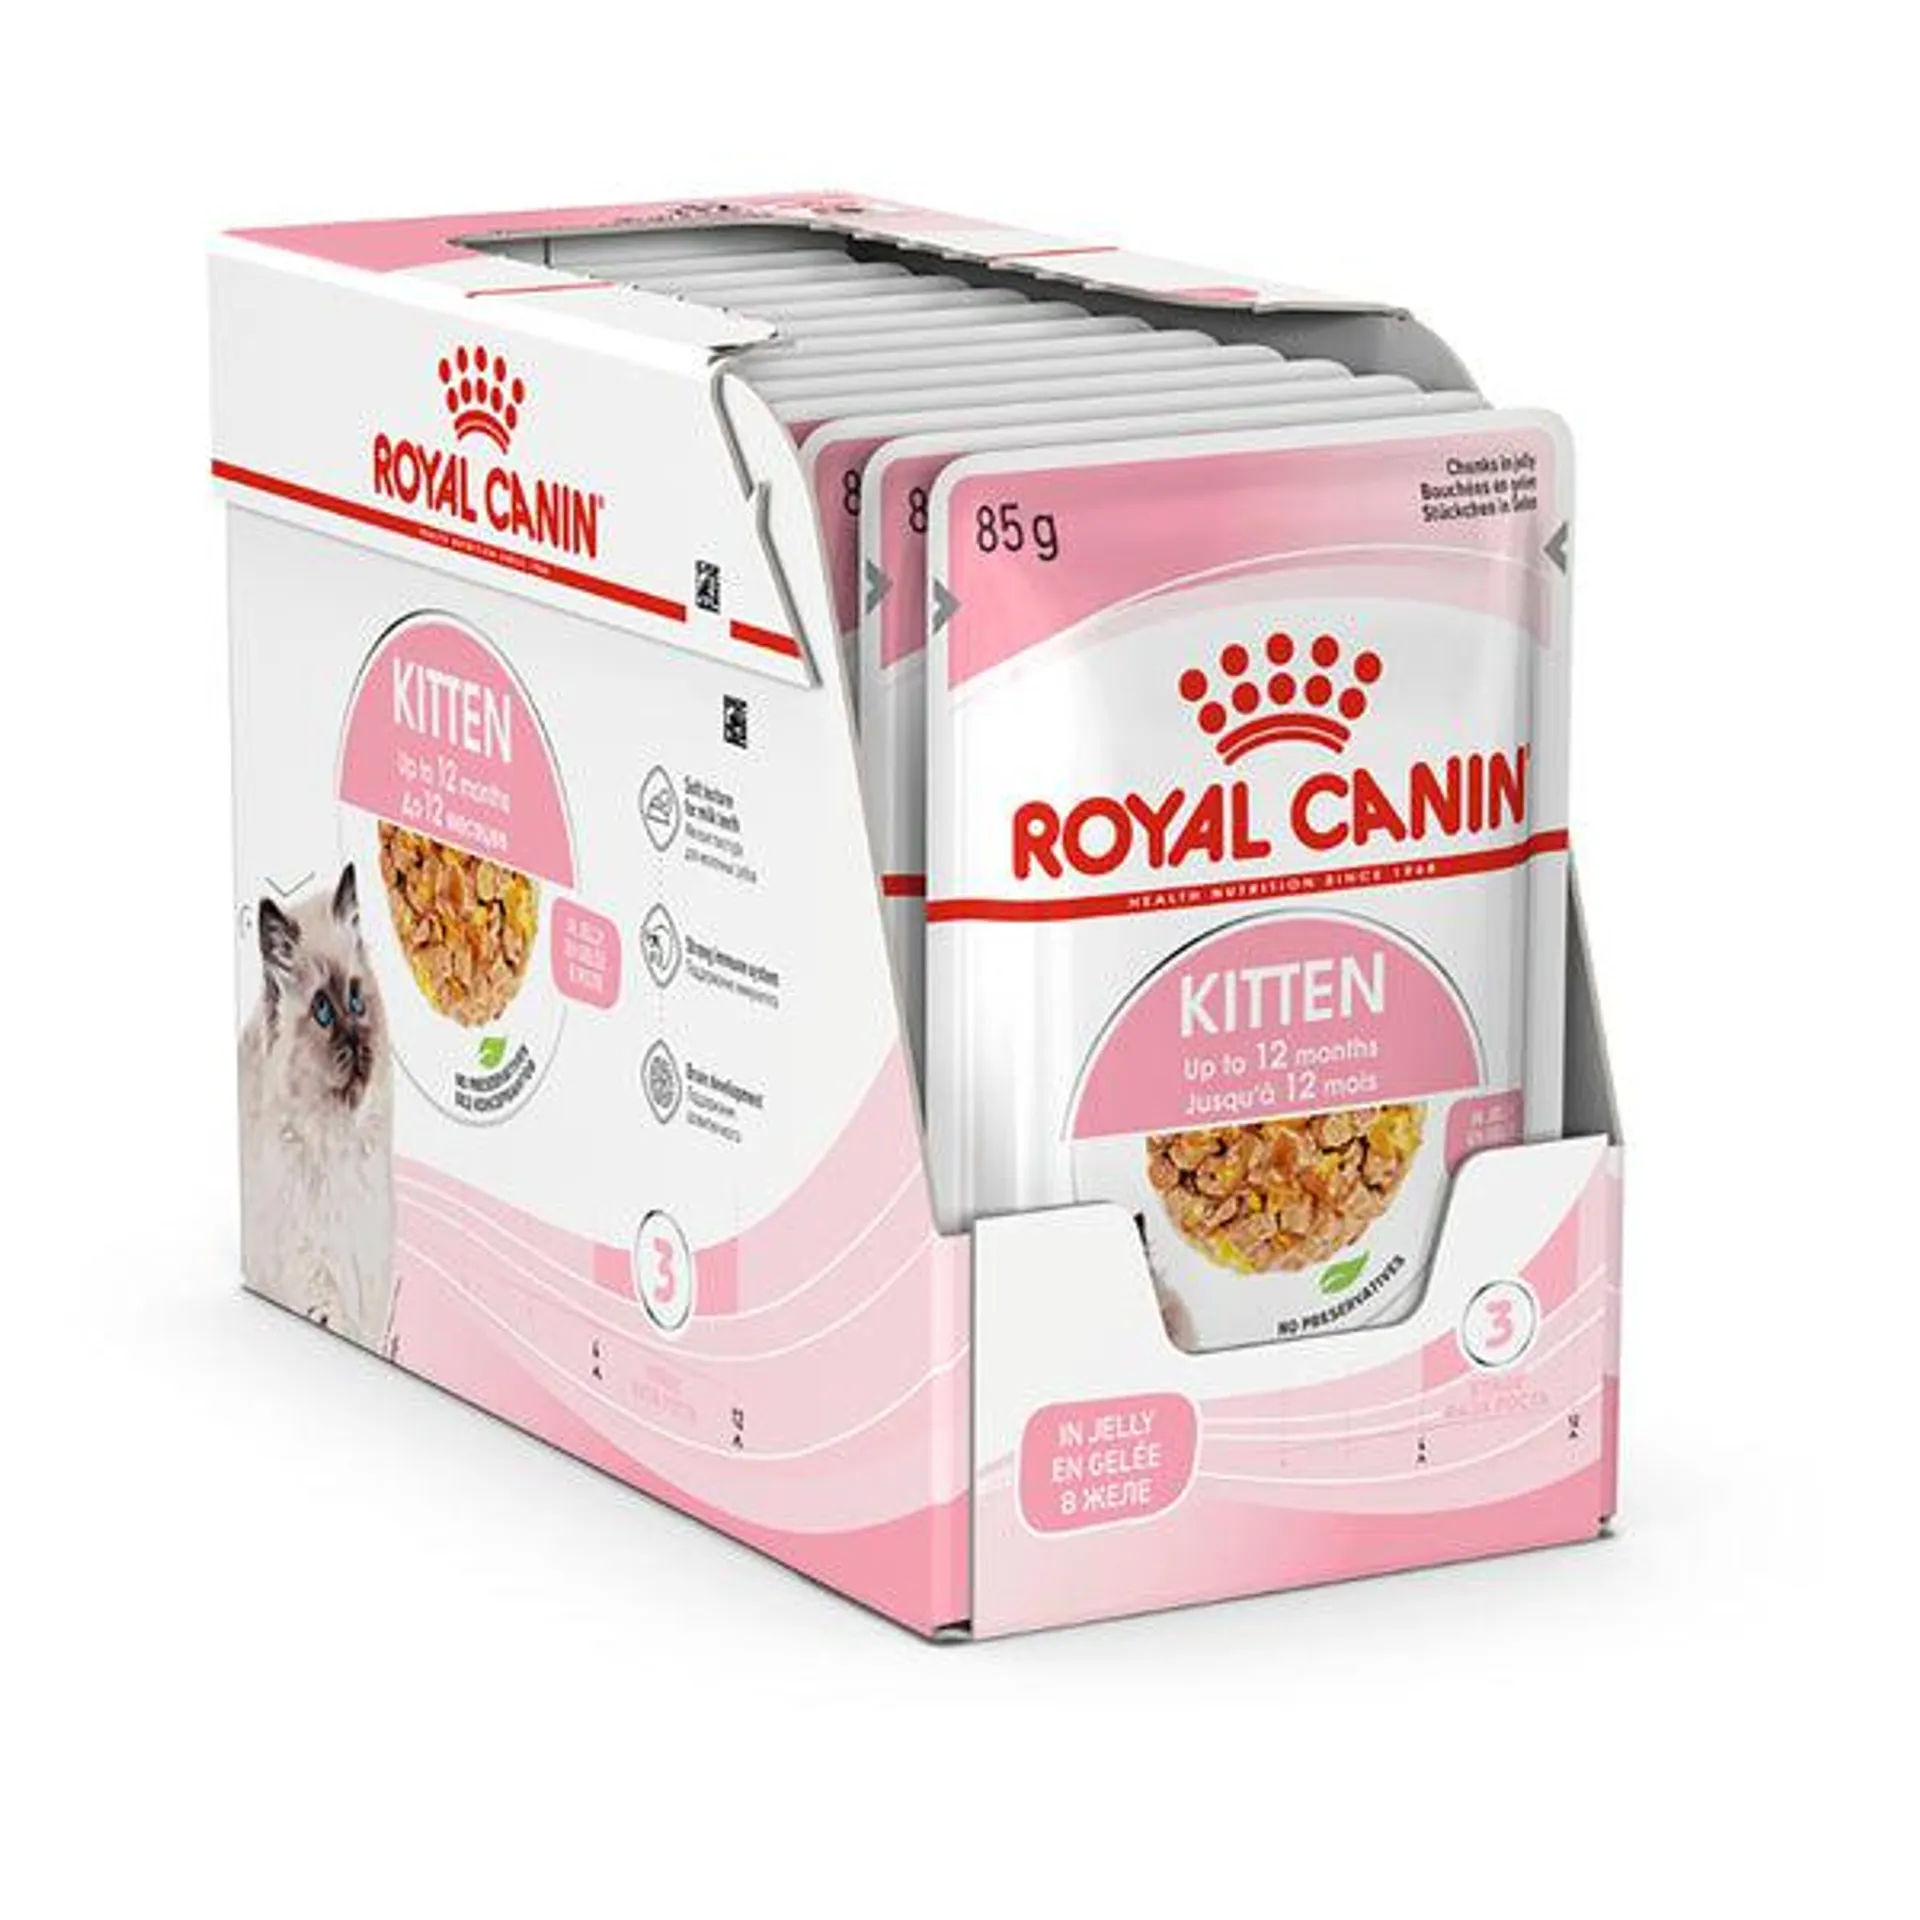 Royal Canin - Kitten in Jelly Cat Wet Food (85g x 12pk)